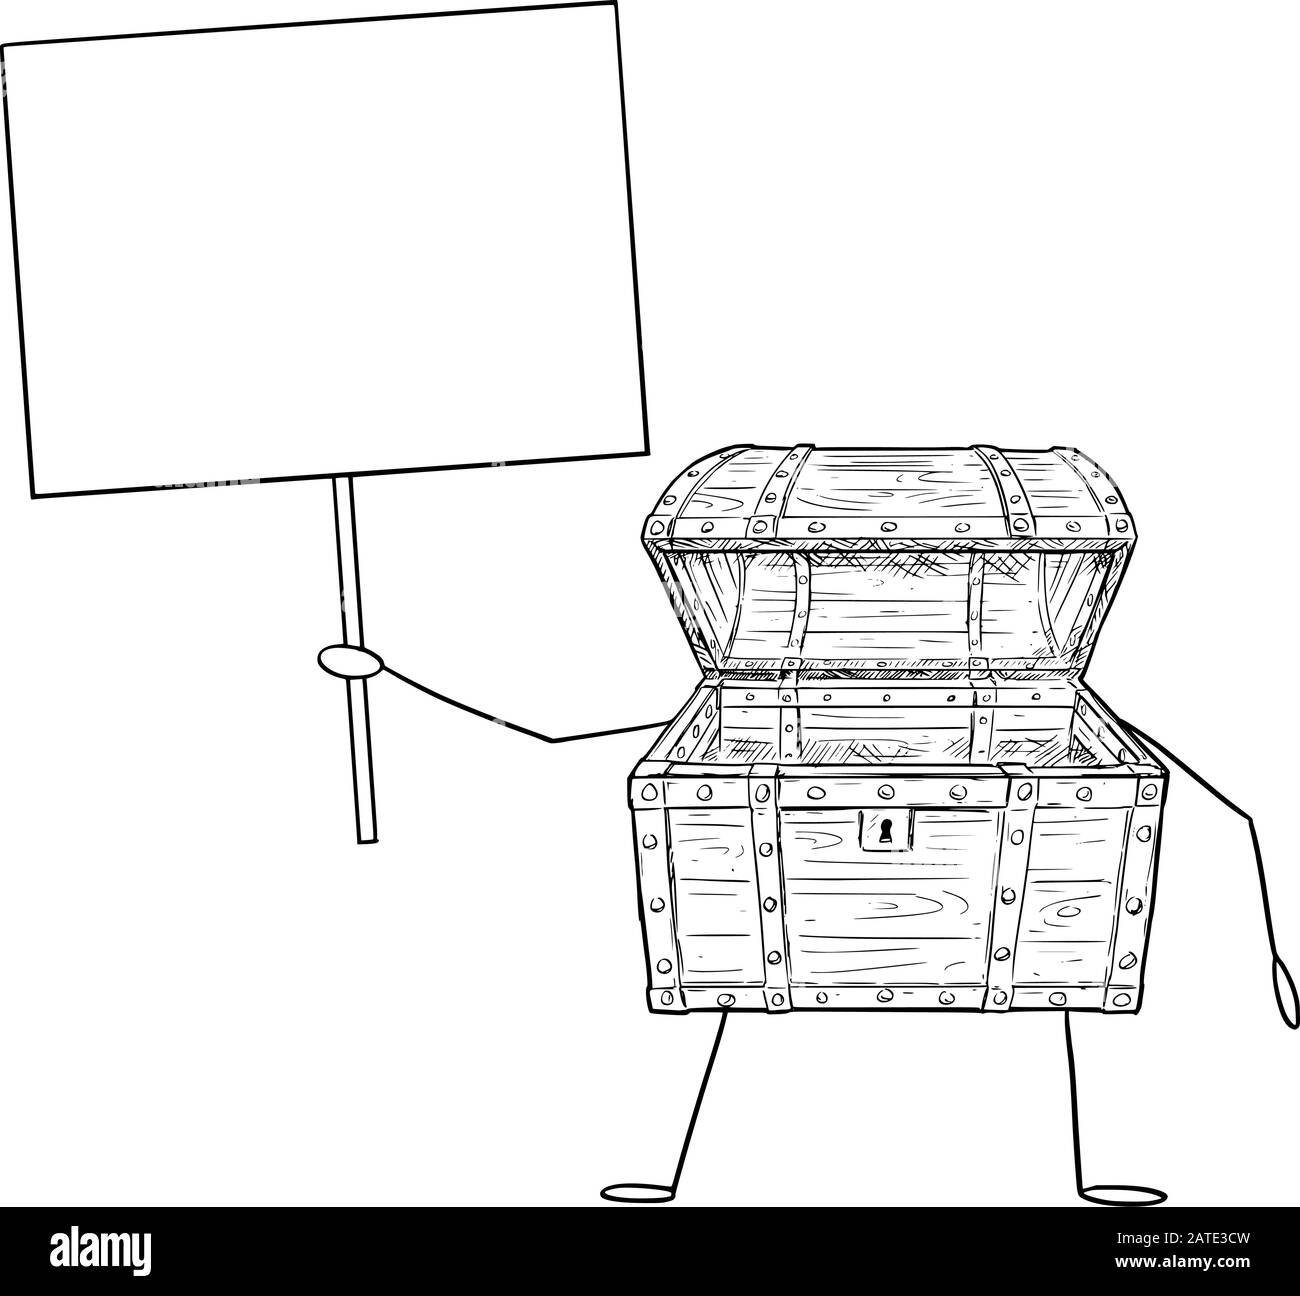 Vektorgrafiken von Cartoon-Leere Figur der Piratenkiste mit offenem Schatz, die ein leeres Schild in der Hand hält. Wirtschafts- oder Finanzwerbung oder Marketingdesign. Stock Vektor